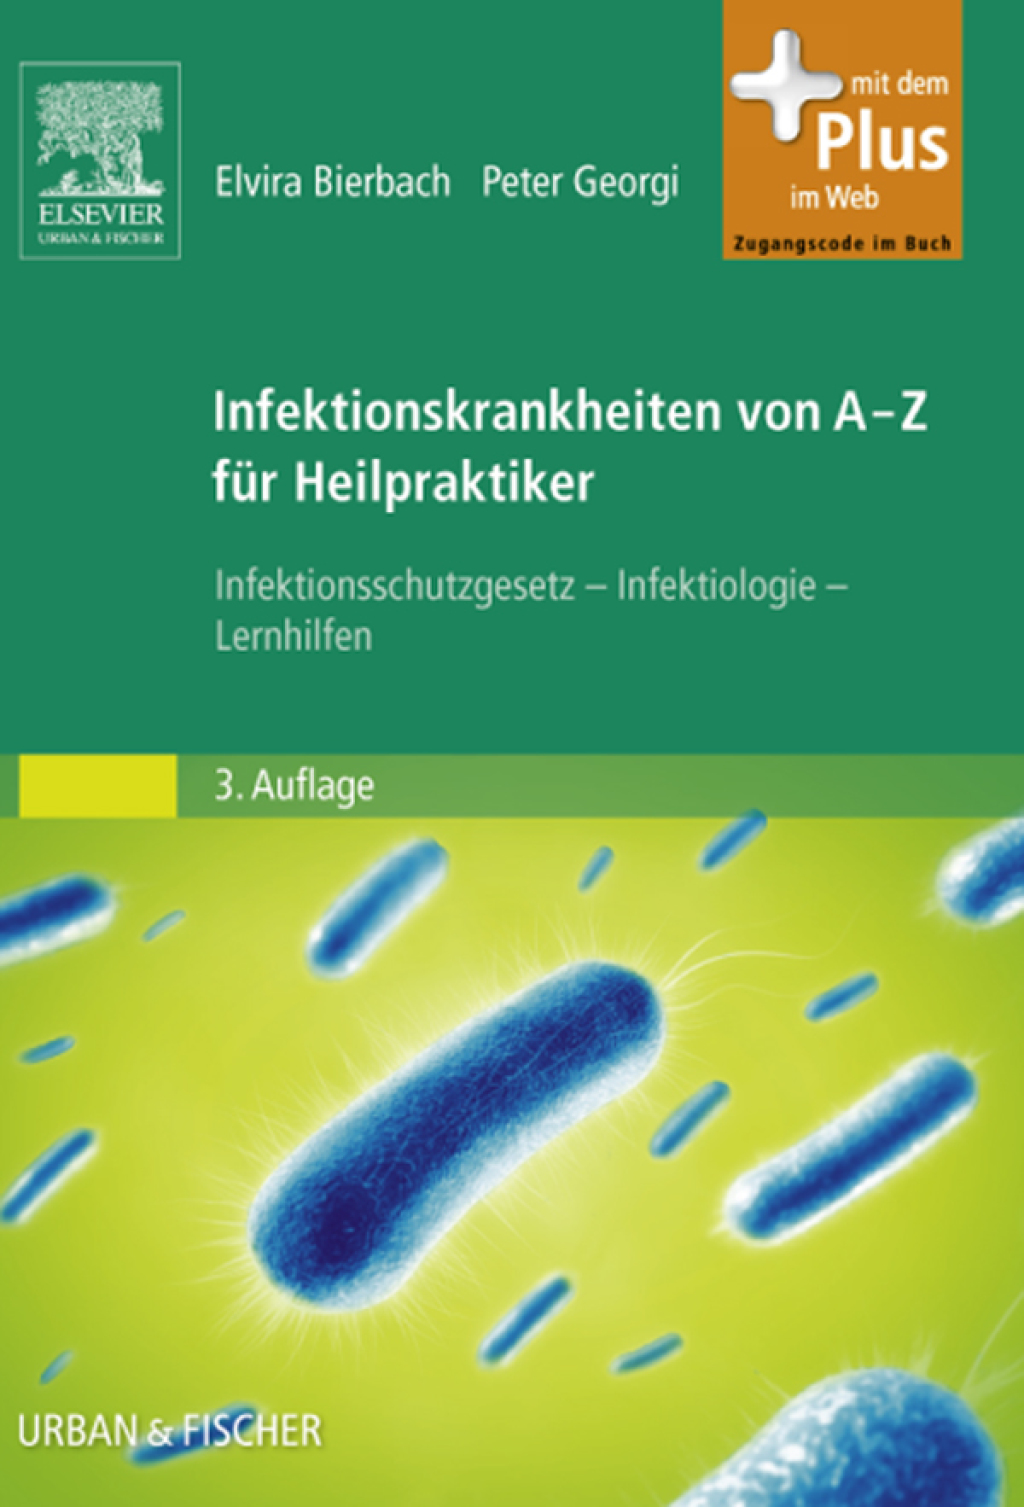 Infektionskrankheiten von A-Z fÃ¼r Heilpraktiker (eBook) - Elvira Bierbach; Peter Georgi